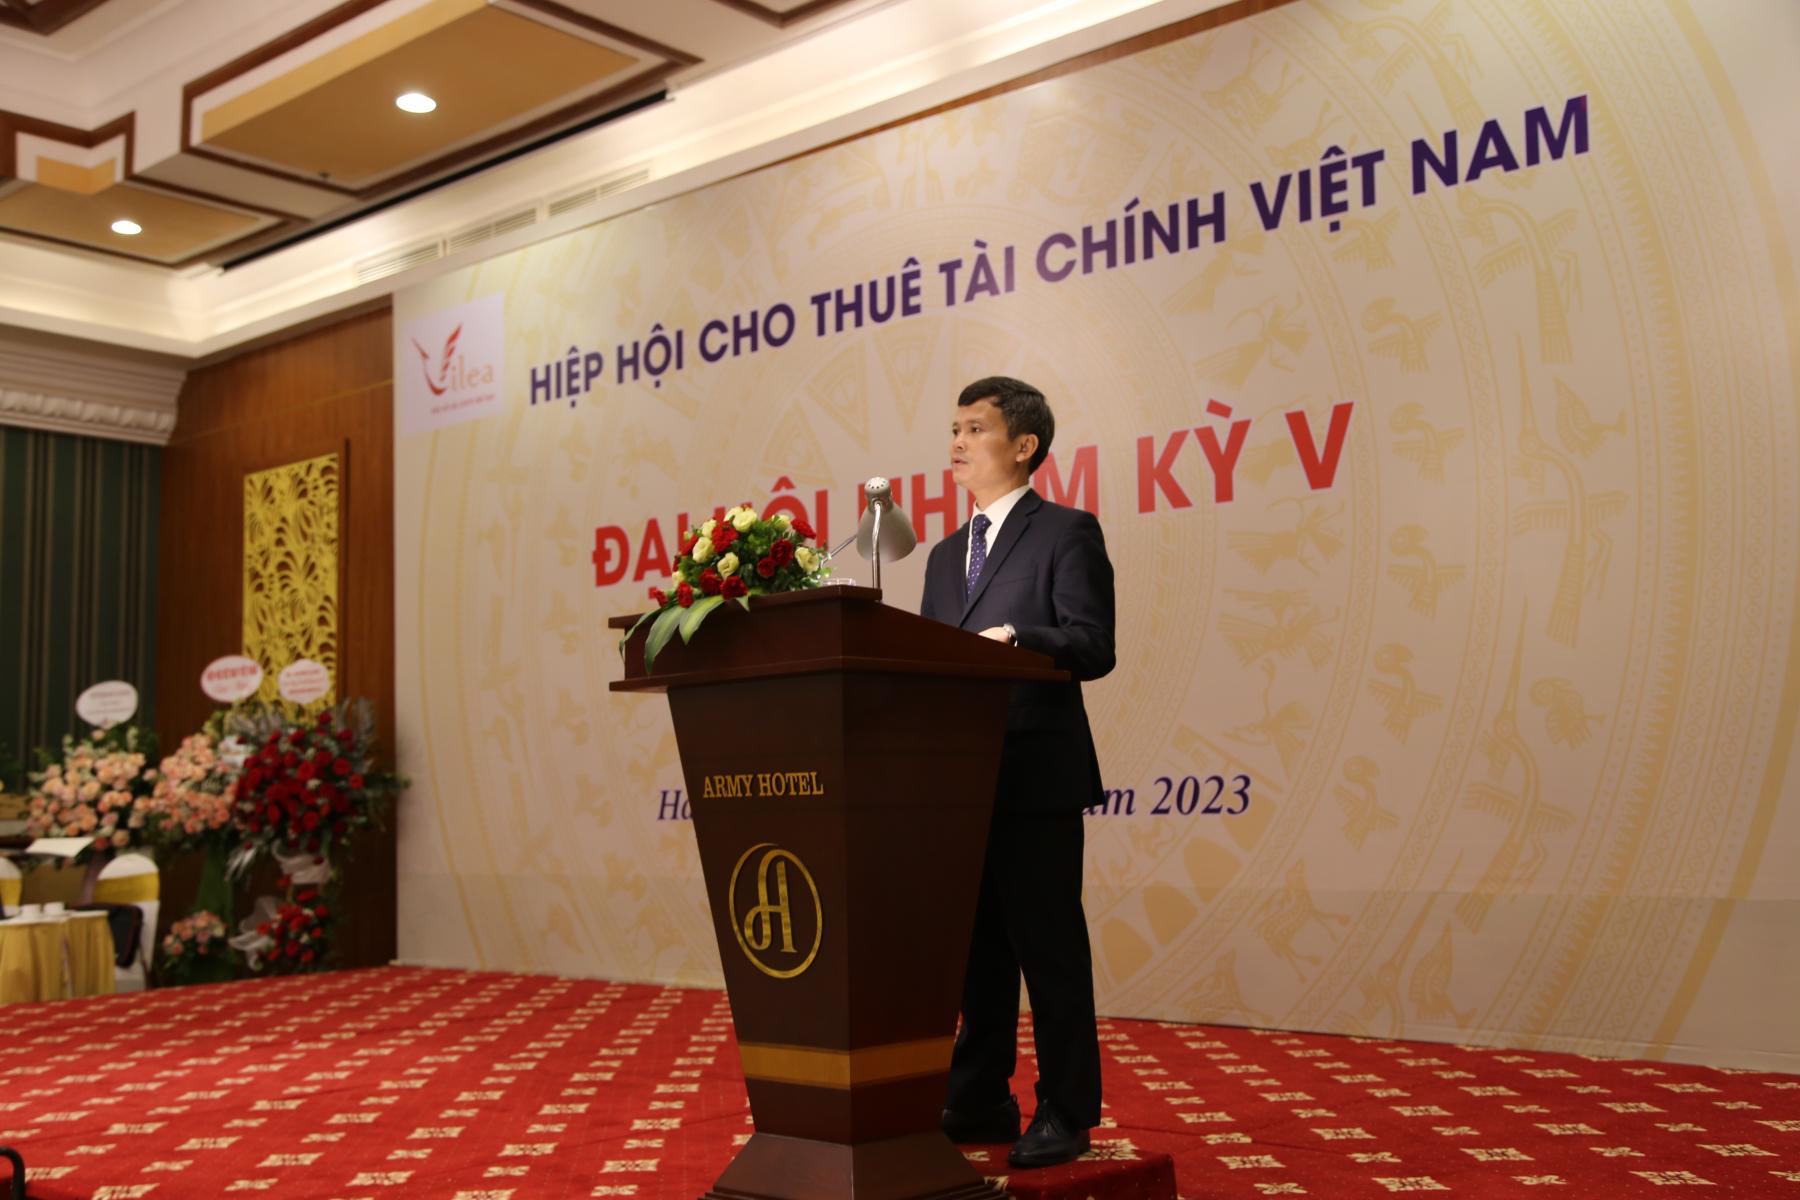 Hiệp hội Cho thuê tài chính Việt Nam tổ chức thành công Đại hội nhiệm kỳ V